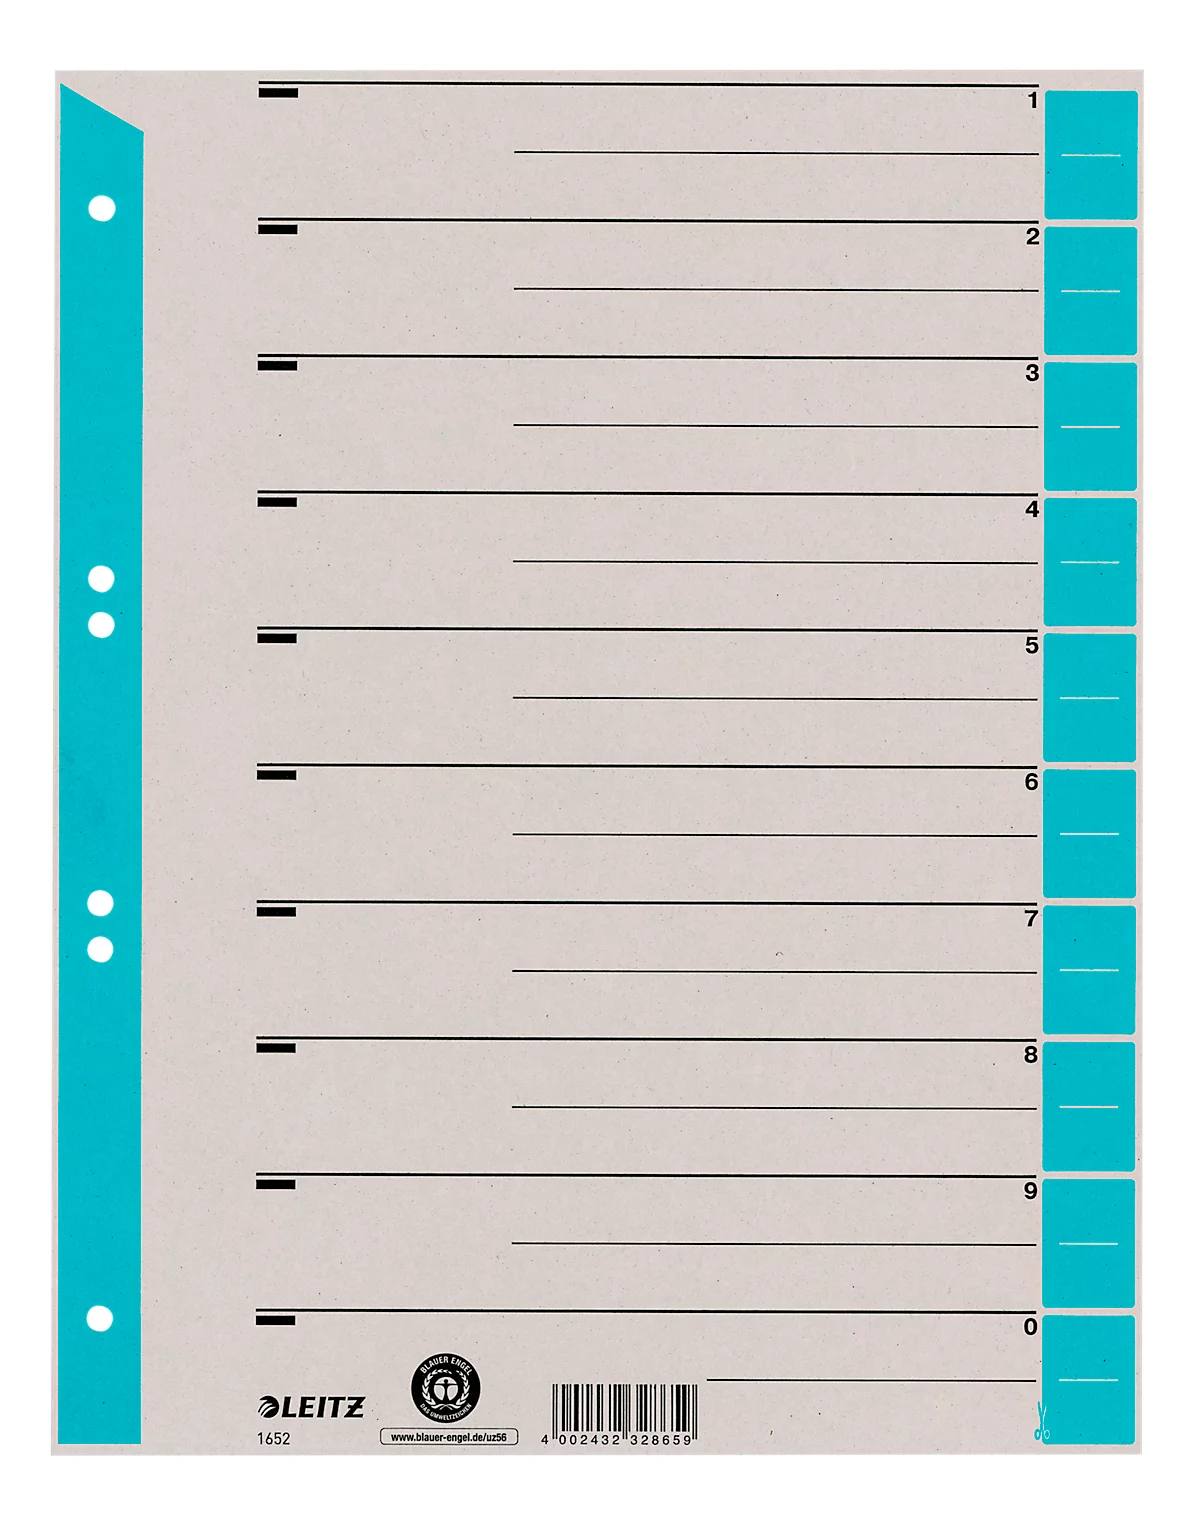 LEITZ® Trennblätter A4 1652, zur freien Verwendung, 100 Stück, hellblau